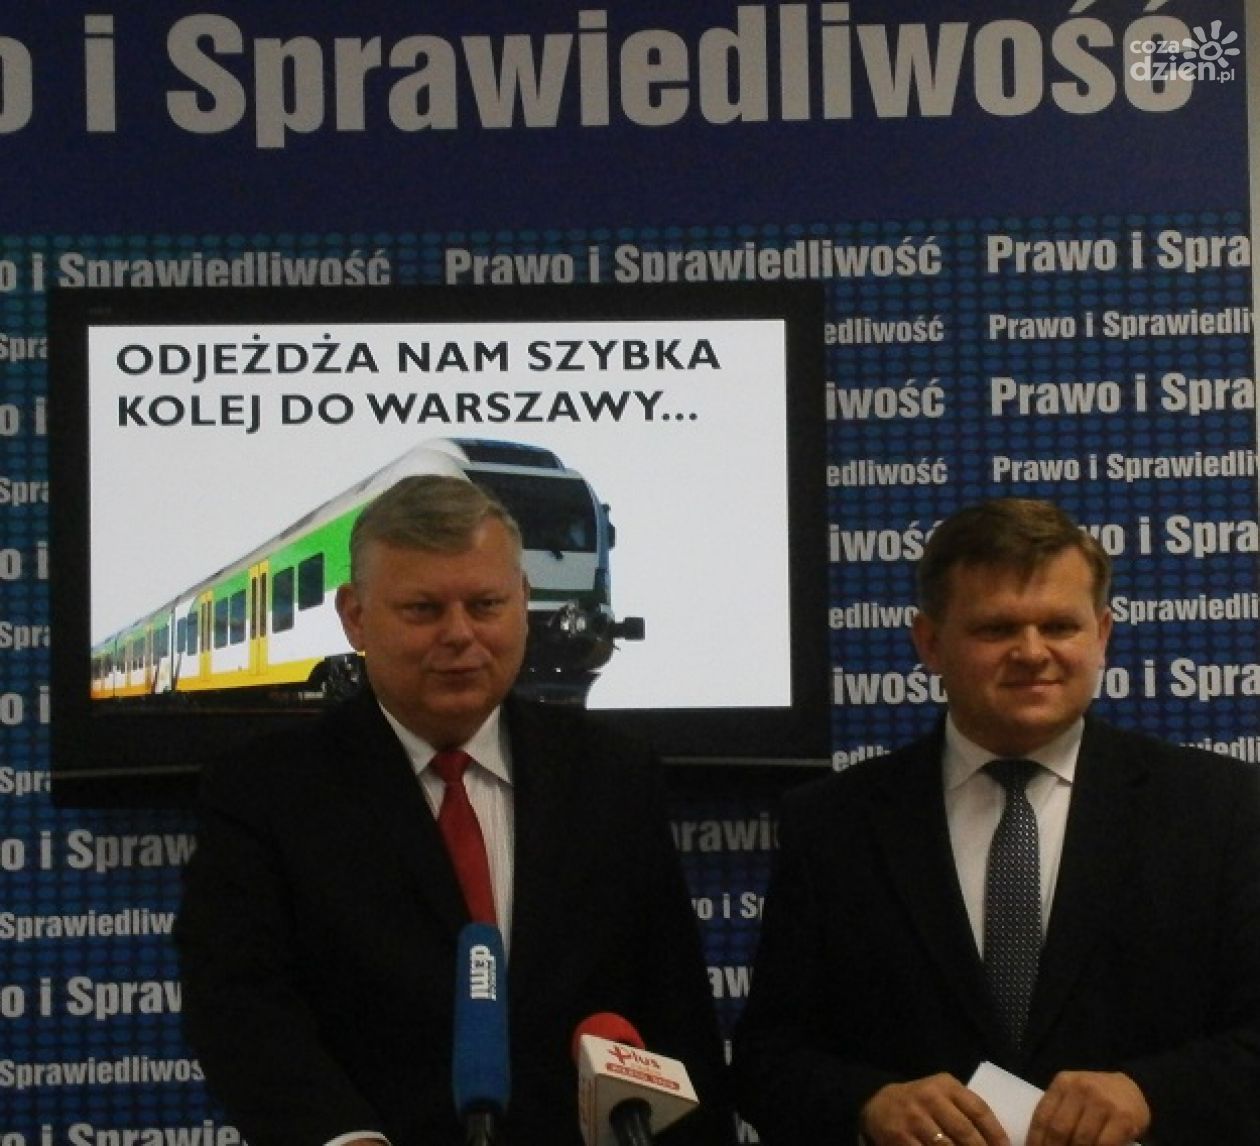 Szybką koleją do Warszawy w 2019 roku?